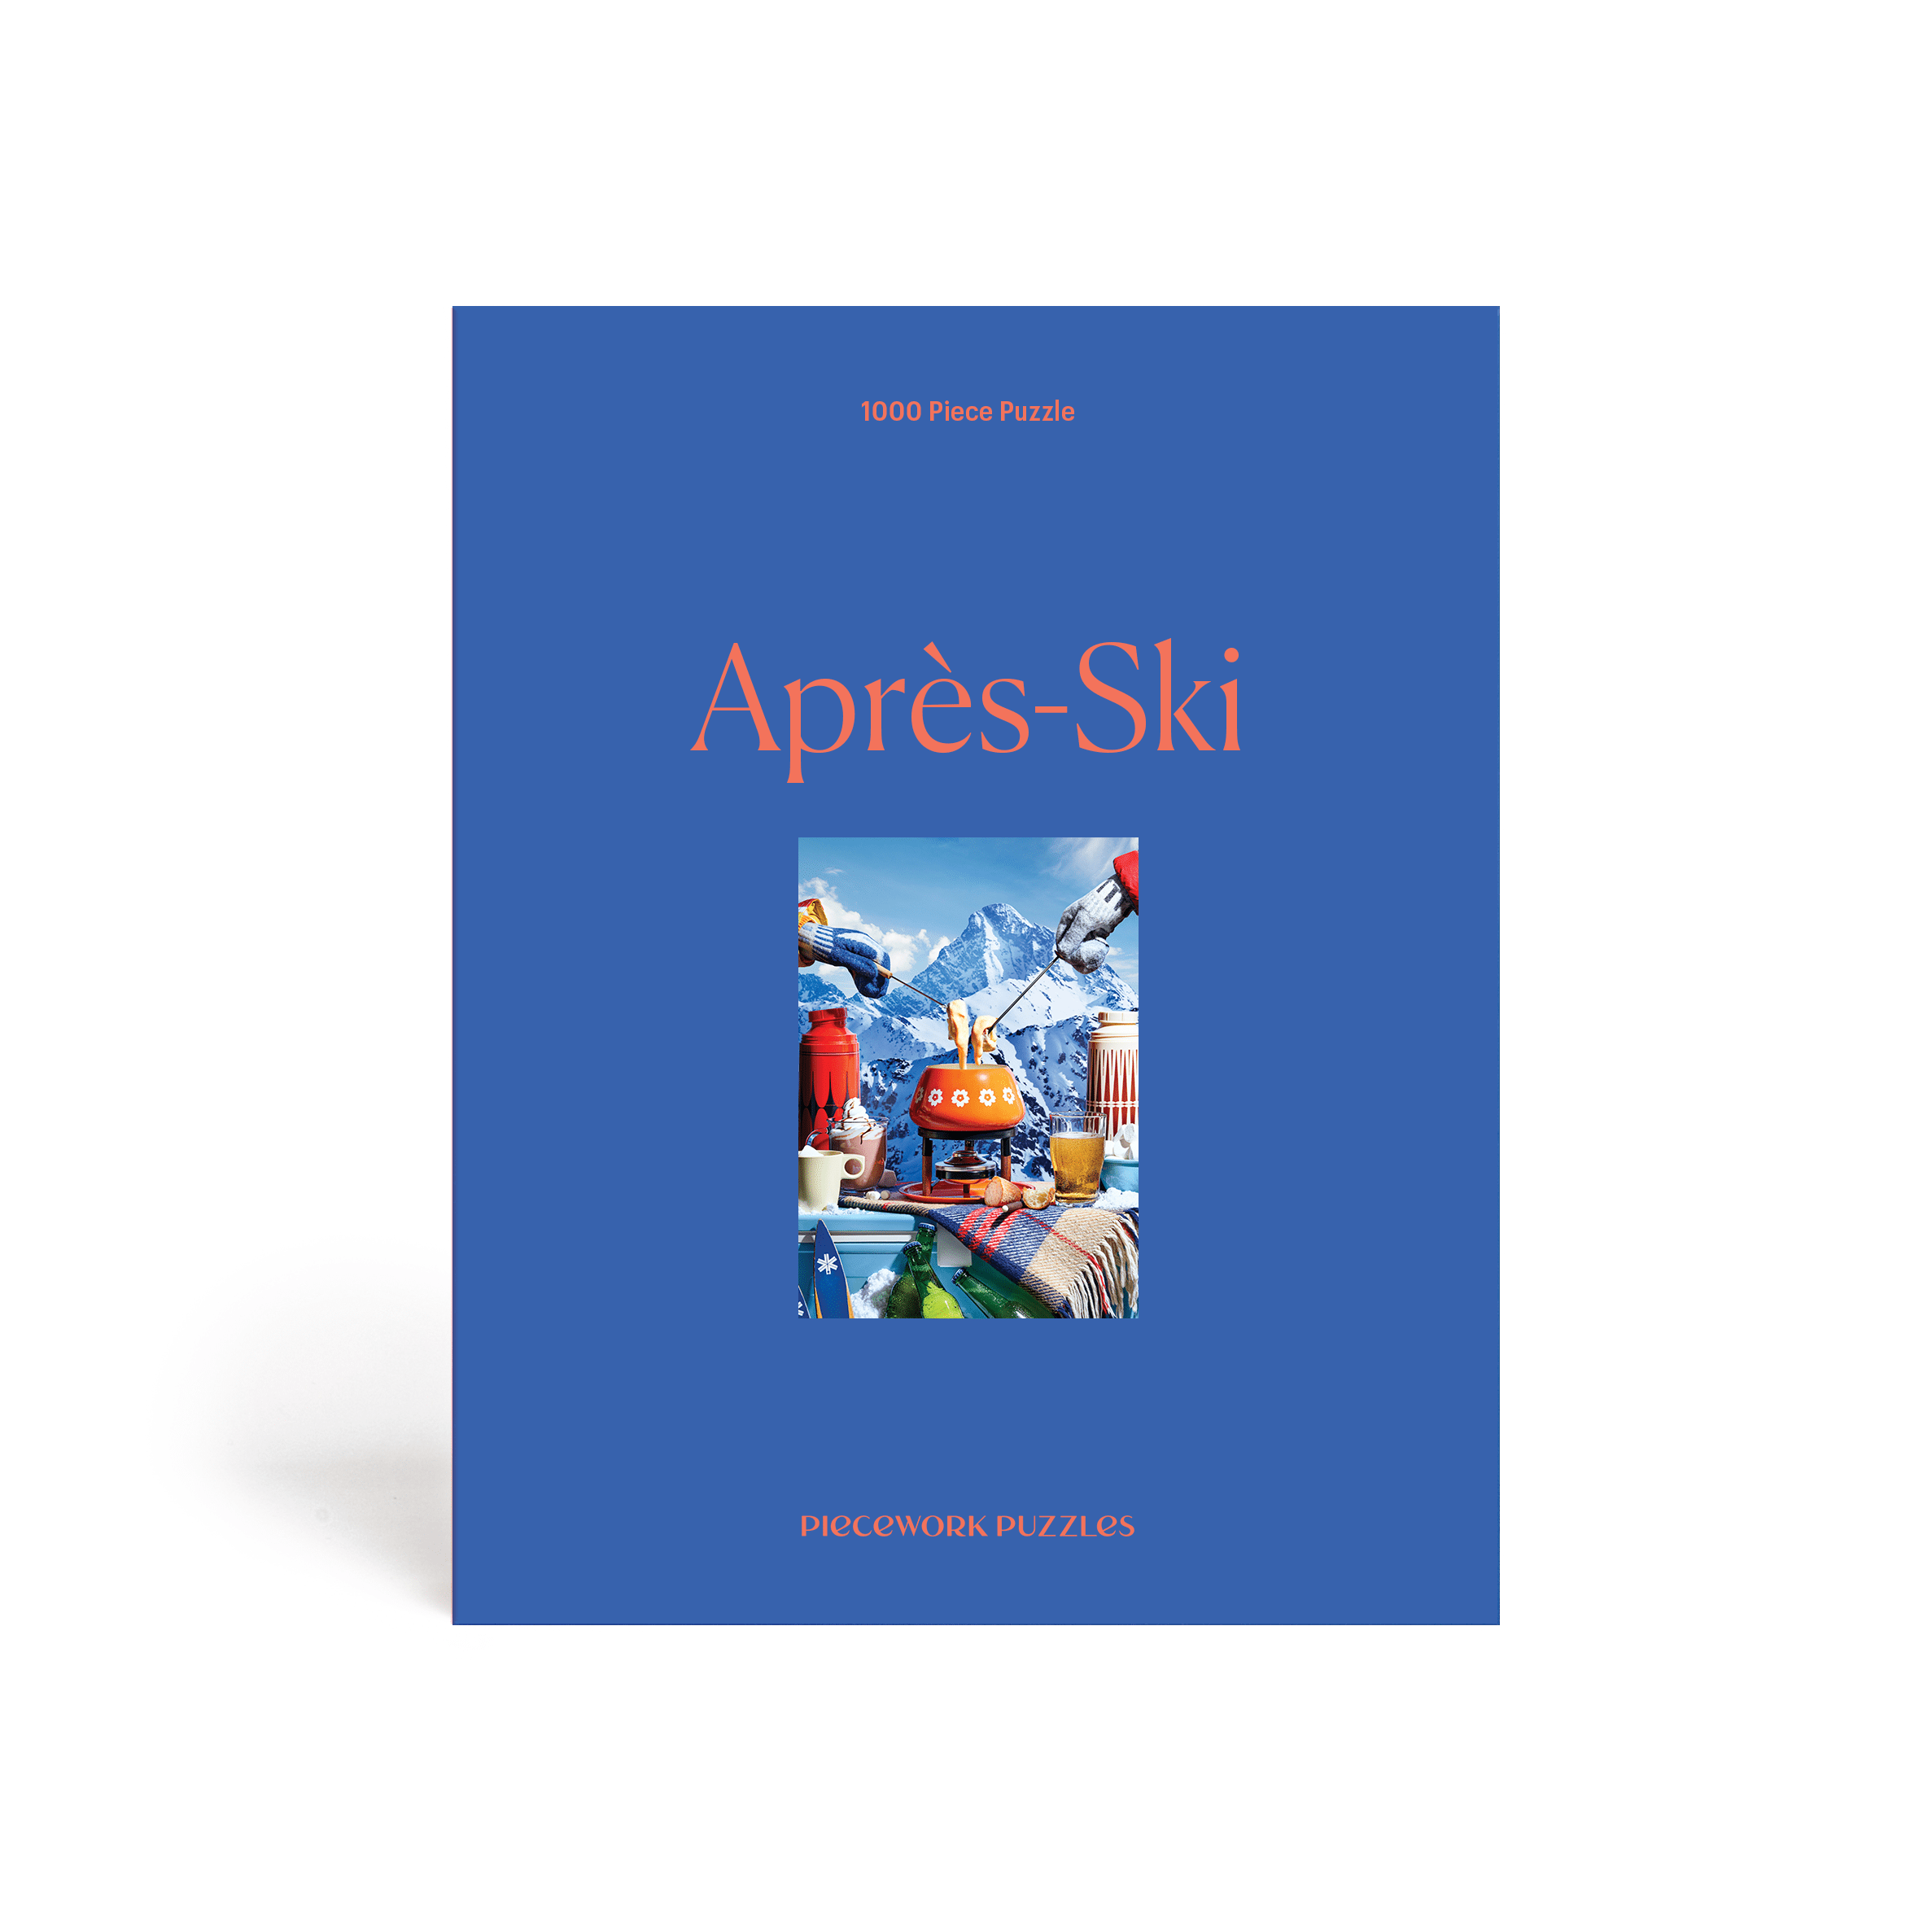 Après-Ski 1000 Piece Puzzle by Piecework Puzzles